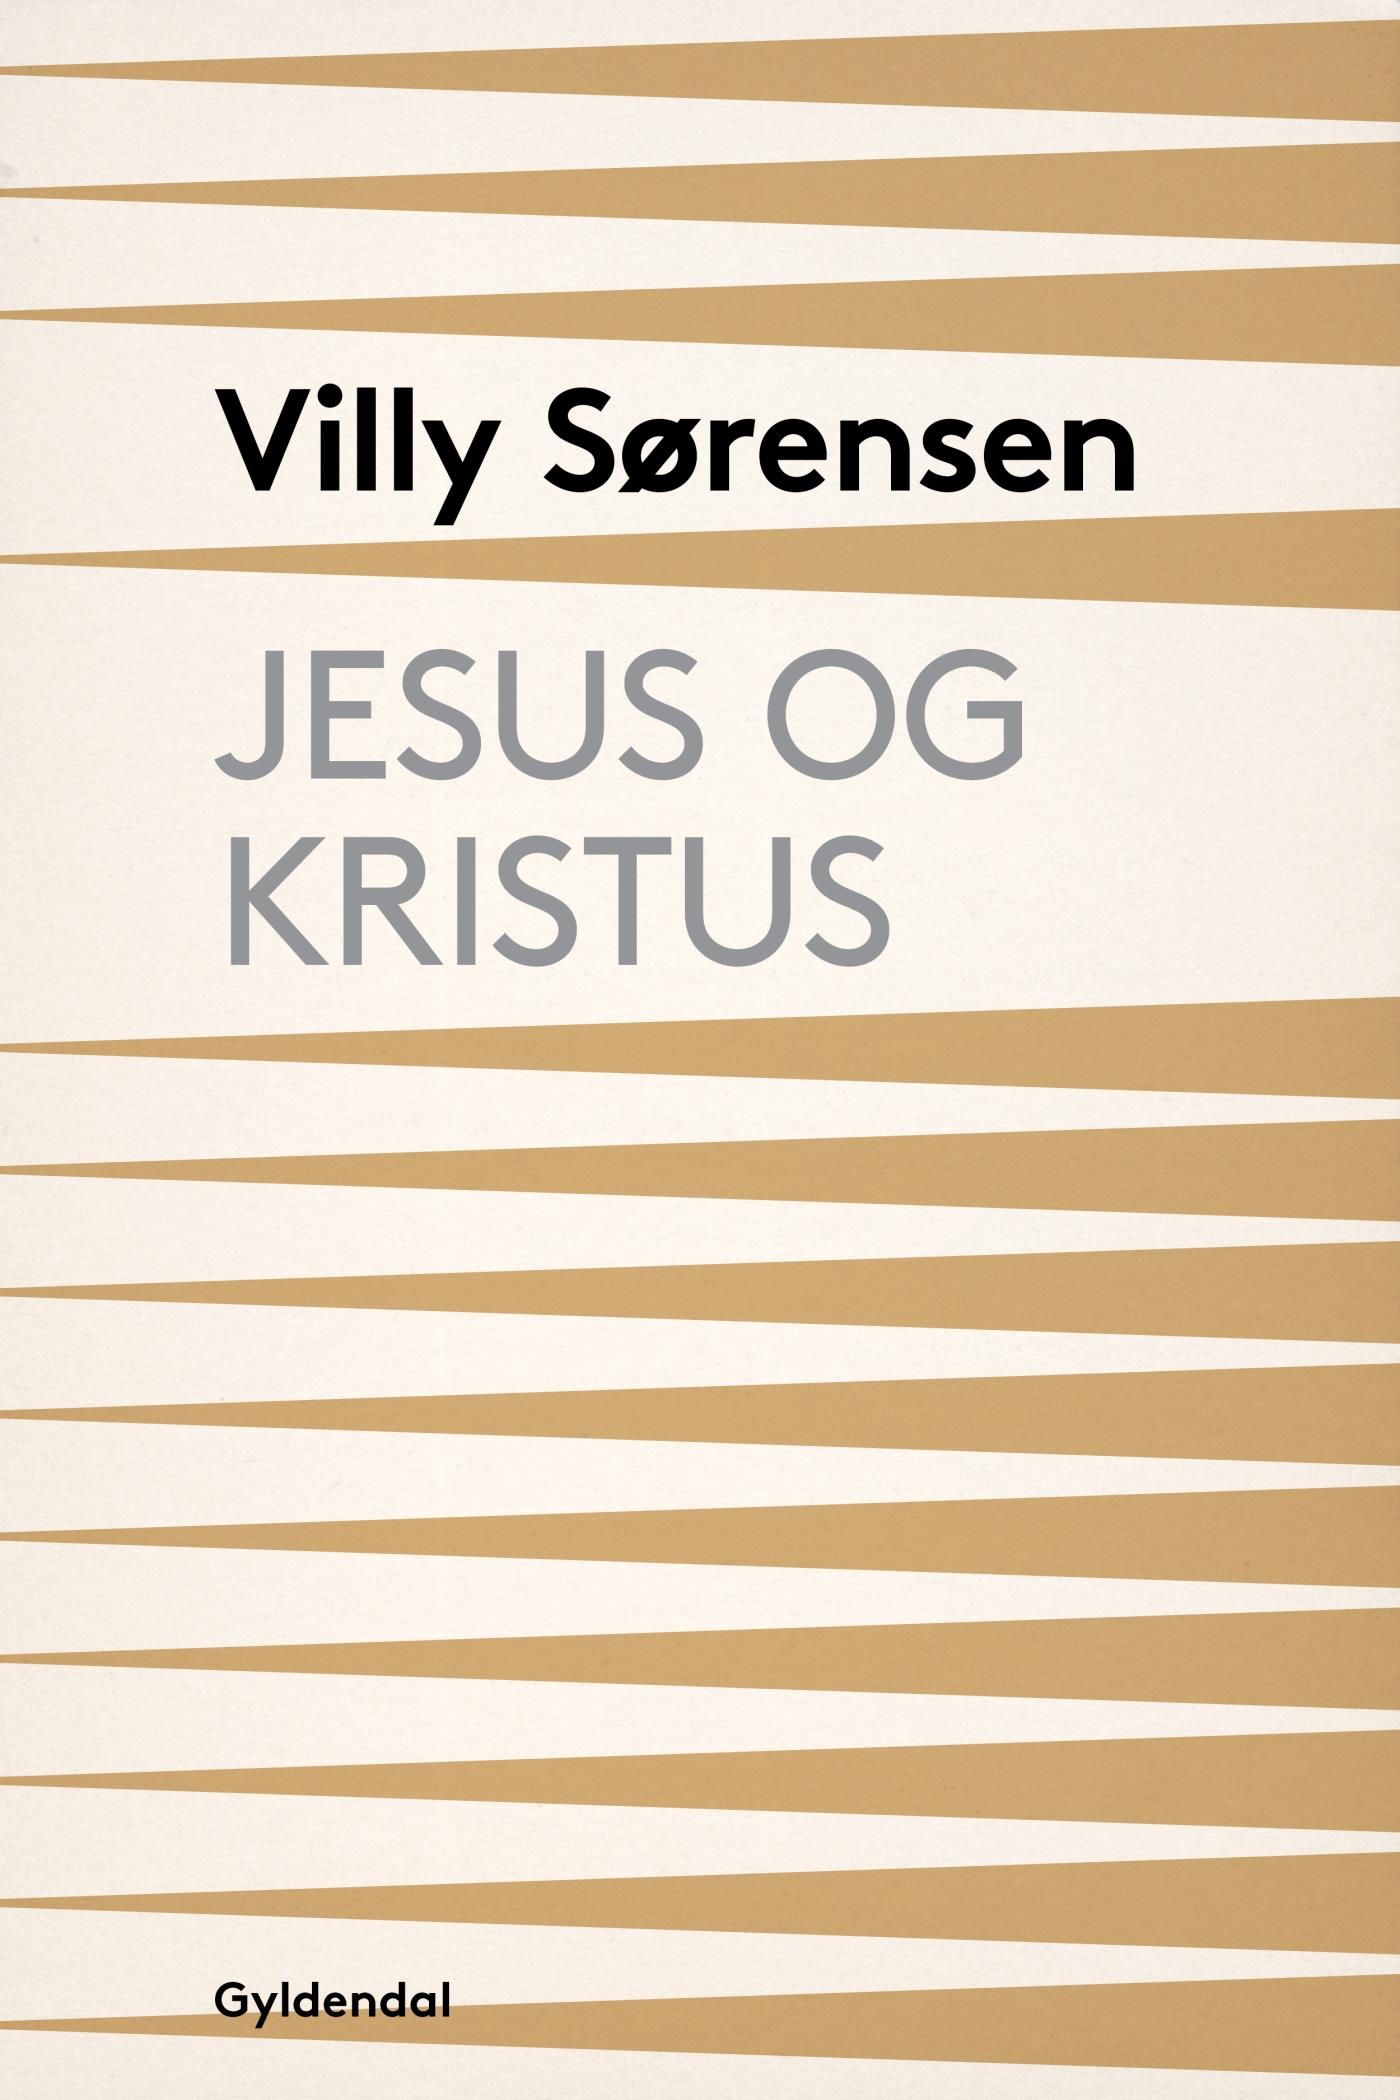 Jesus og Kristus, e-bok av Villy Sørensen